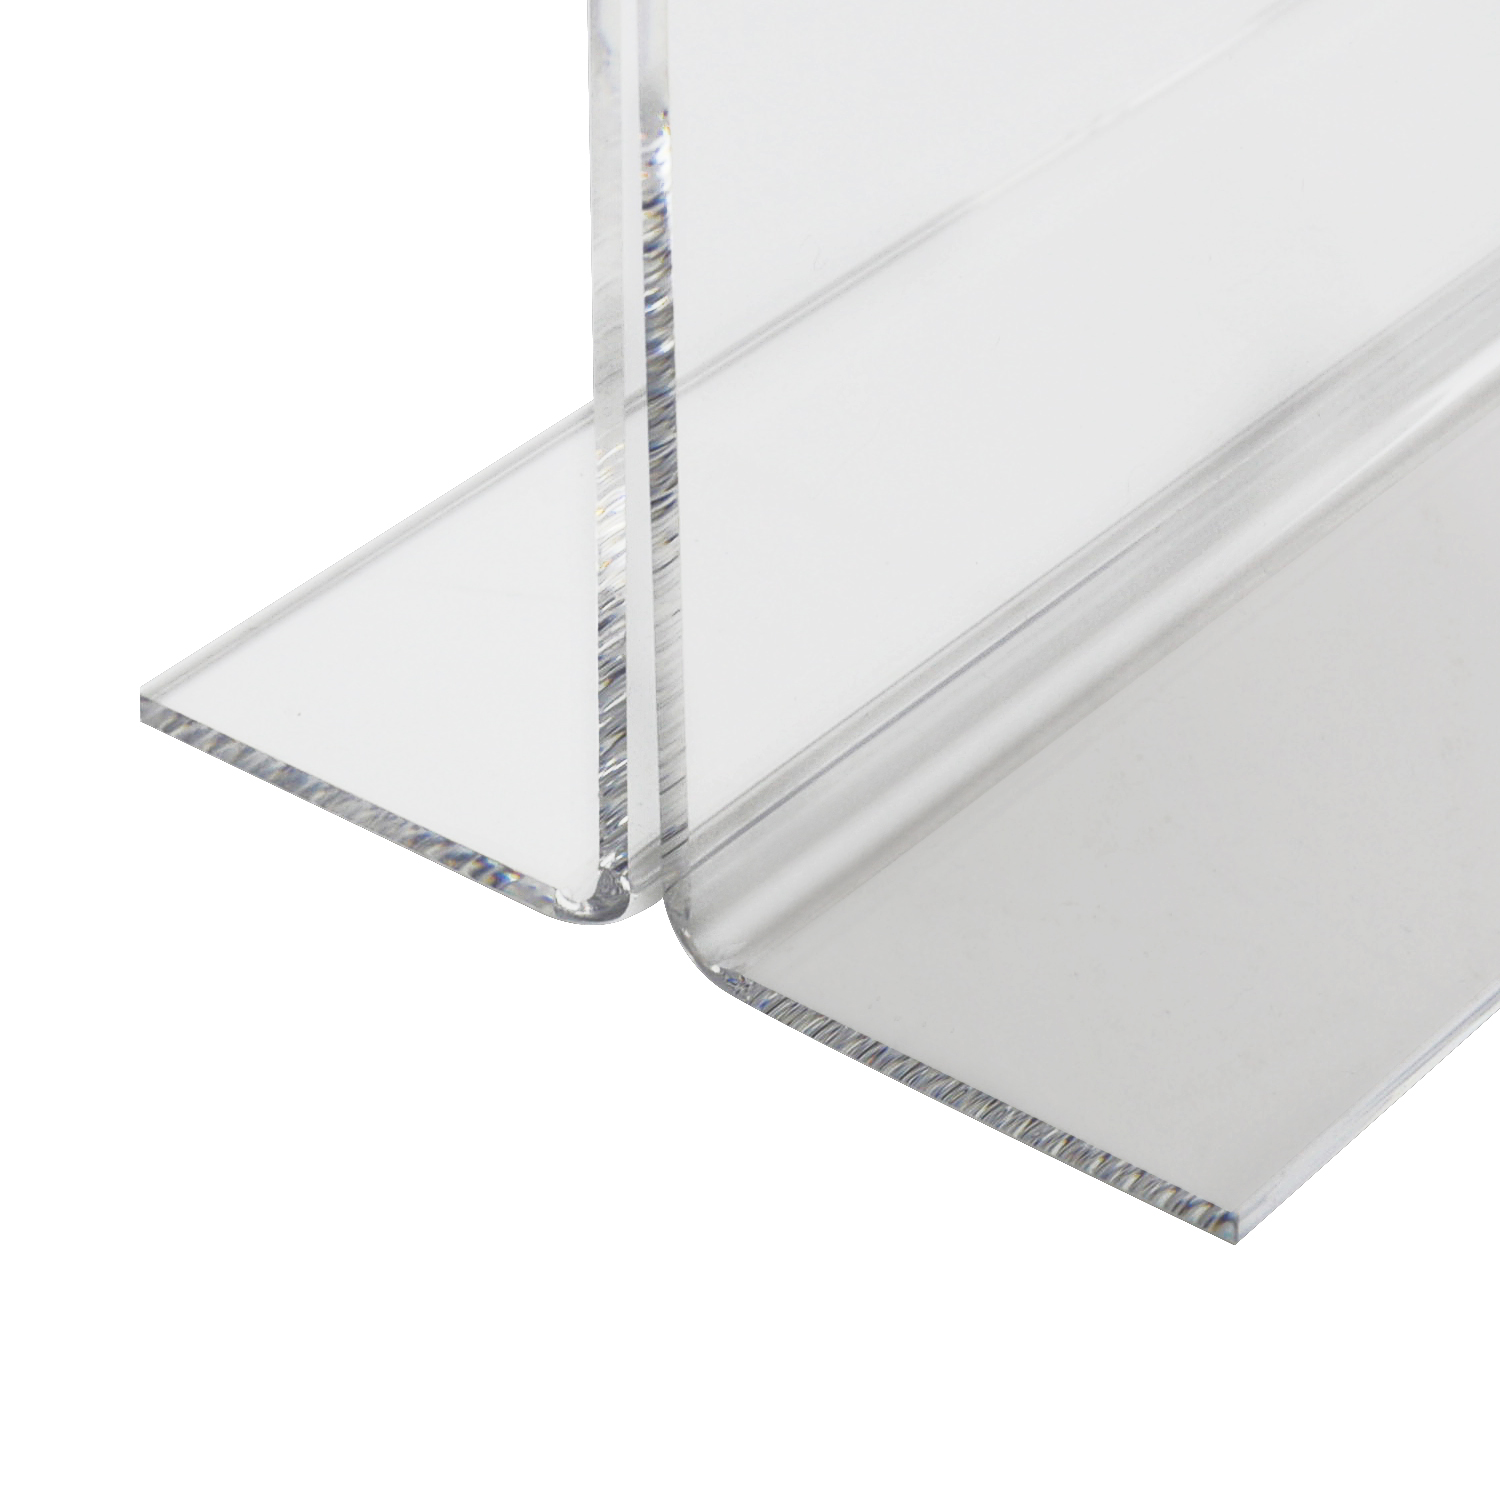 Tischaufsteller oder Menükarte aus Acryl für DIN A5 von HMF mit den Maßen 15.5 x 21.7 x 8.4 cm